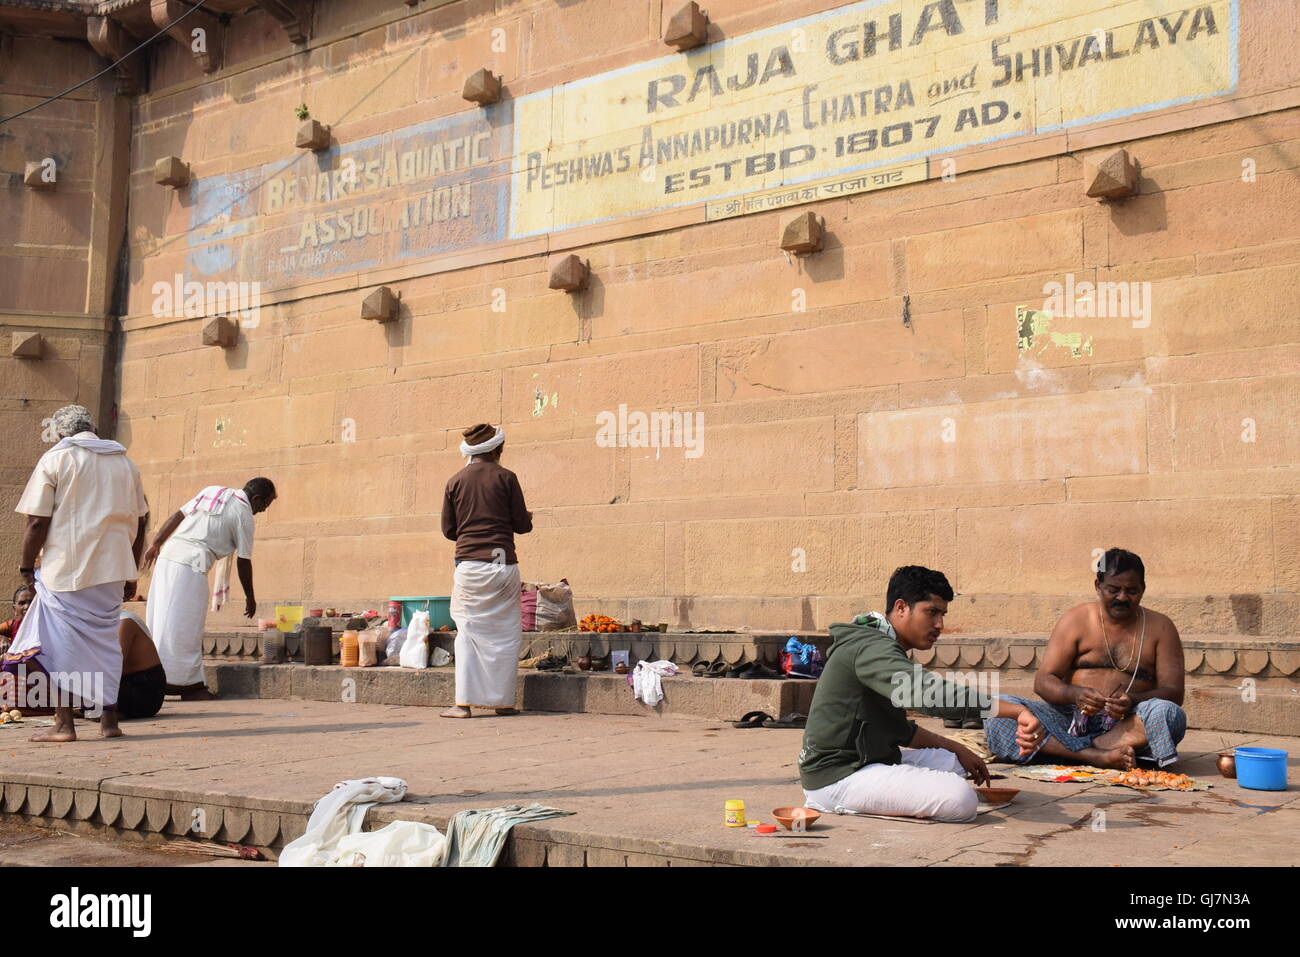 La vie quotidienne des indiens sur le Raja ghat de Varanasi, Uttar Pradesh, Inde Banque D'Images